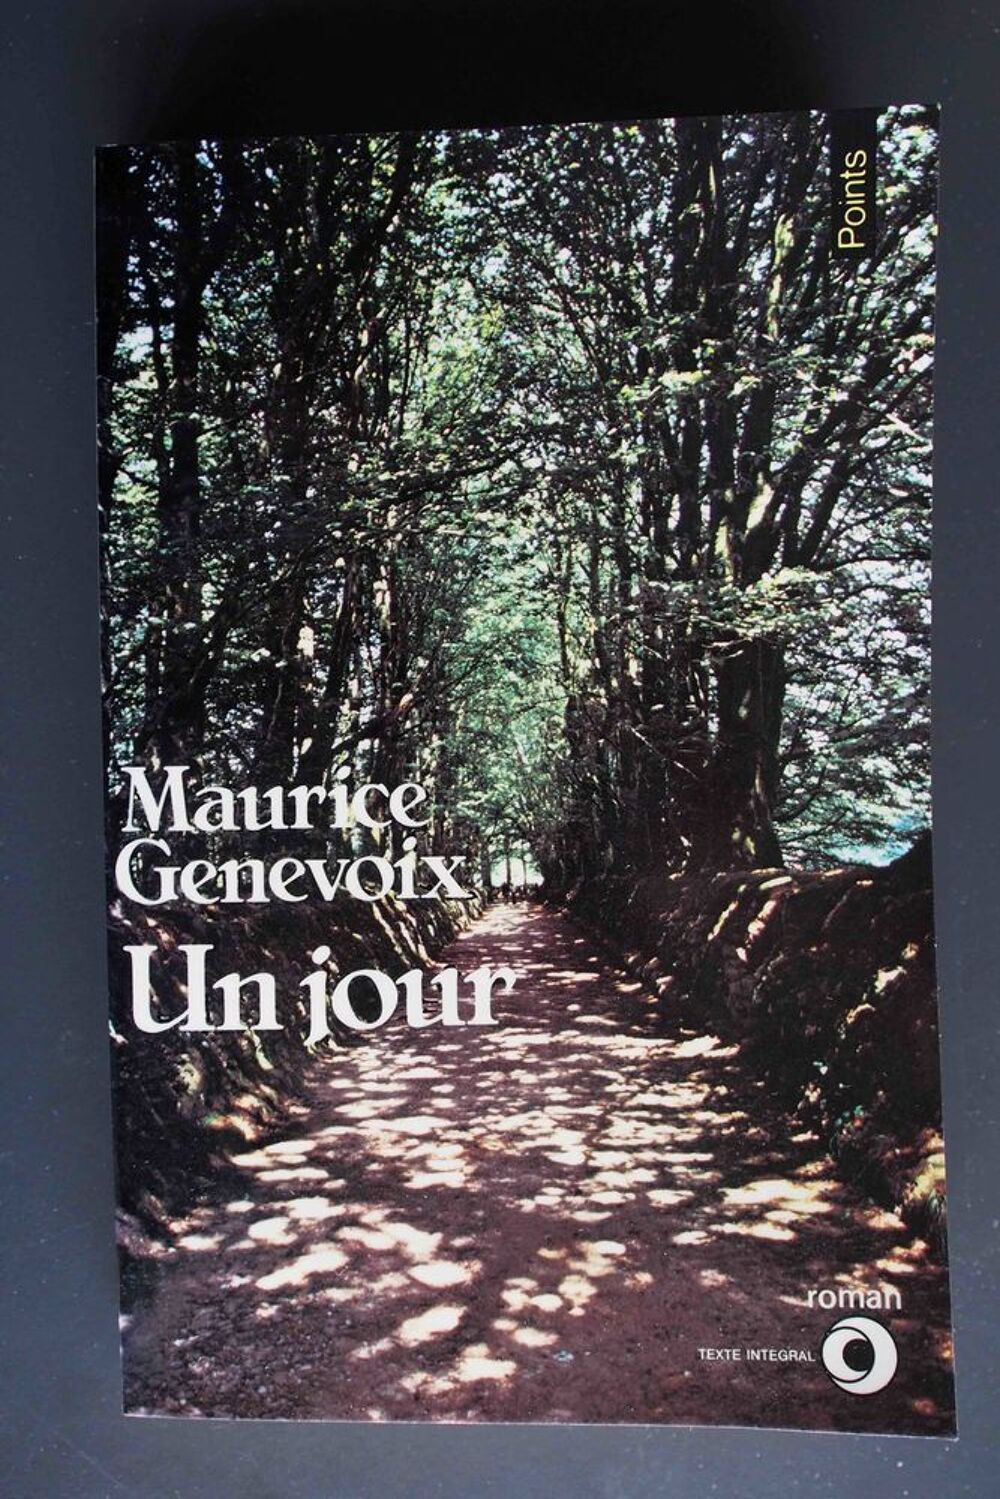 UN JOUR - Maurice Genevois,
Livres et BD